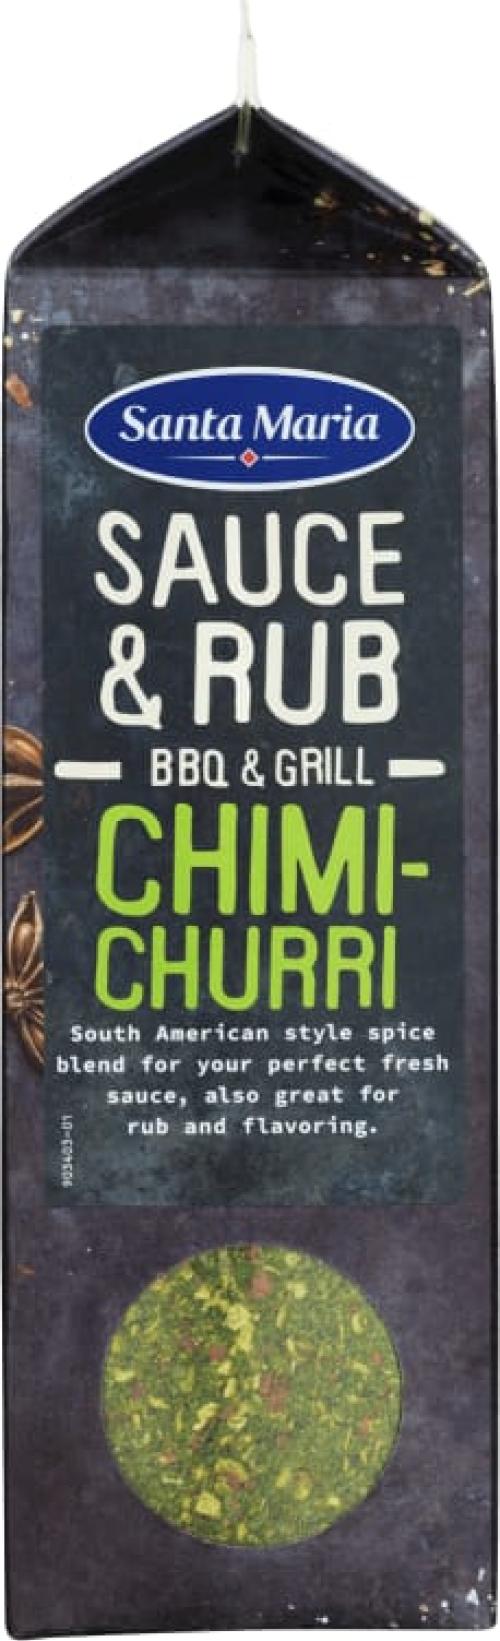 Bbq Sauce&Rub Mix Chimichurri 350g St. M